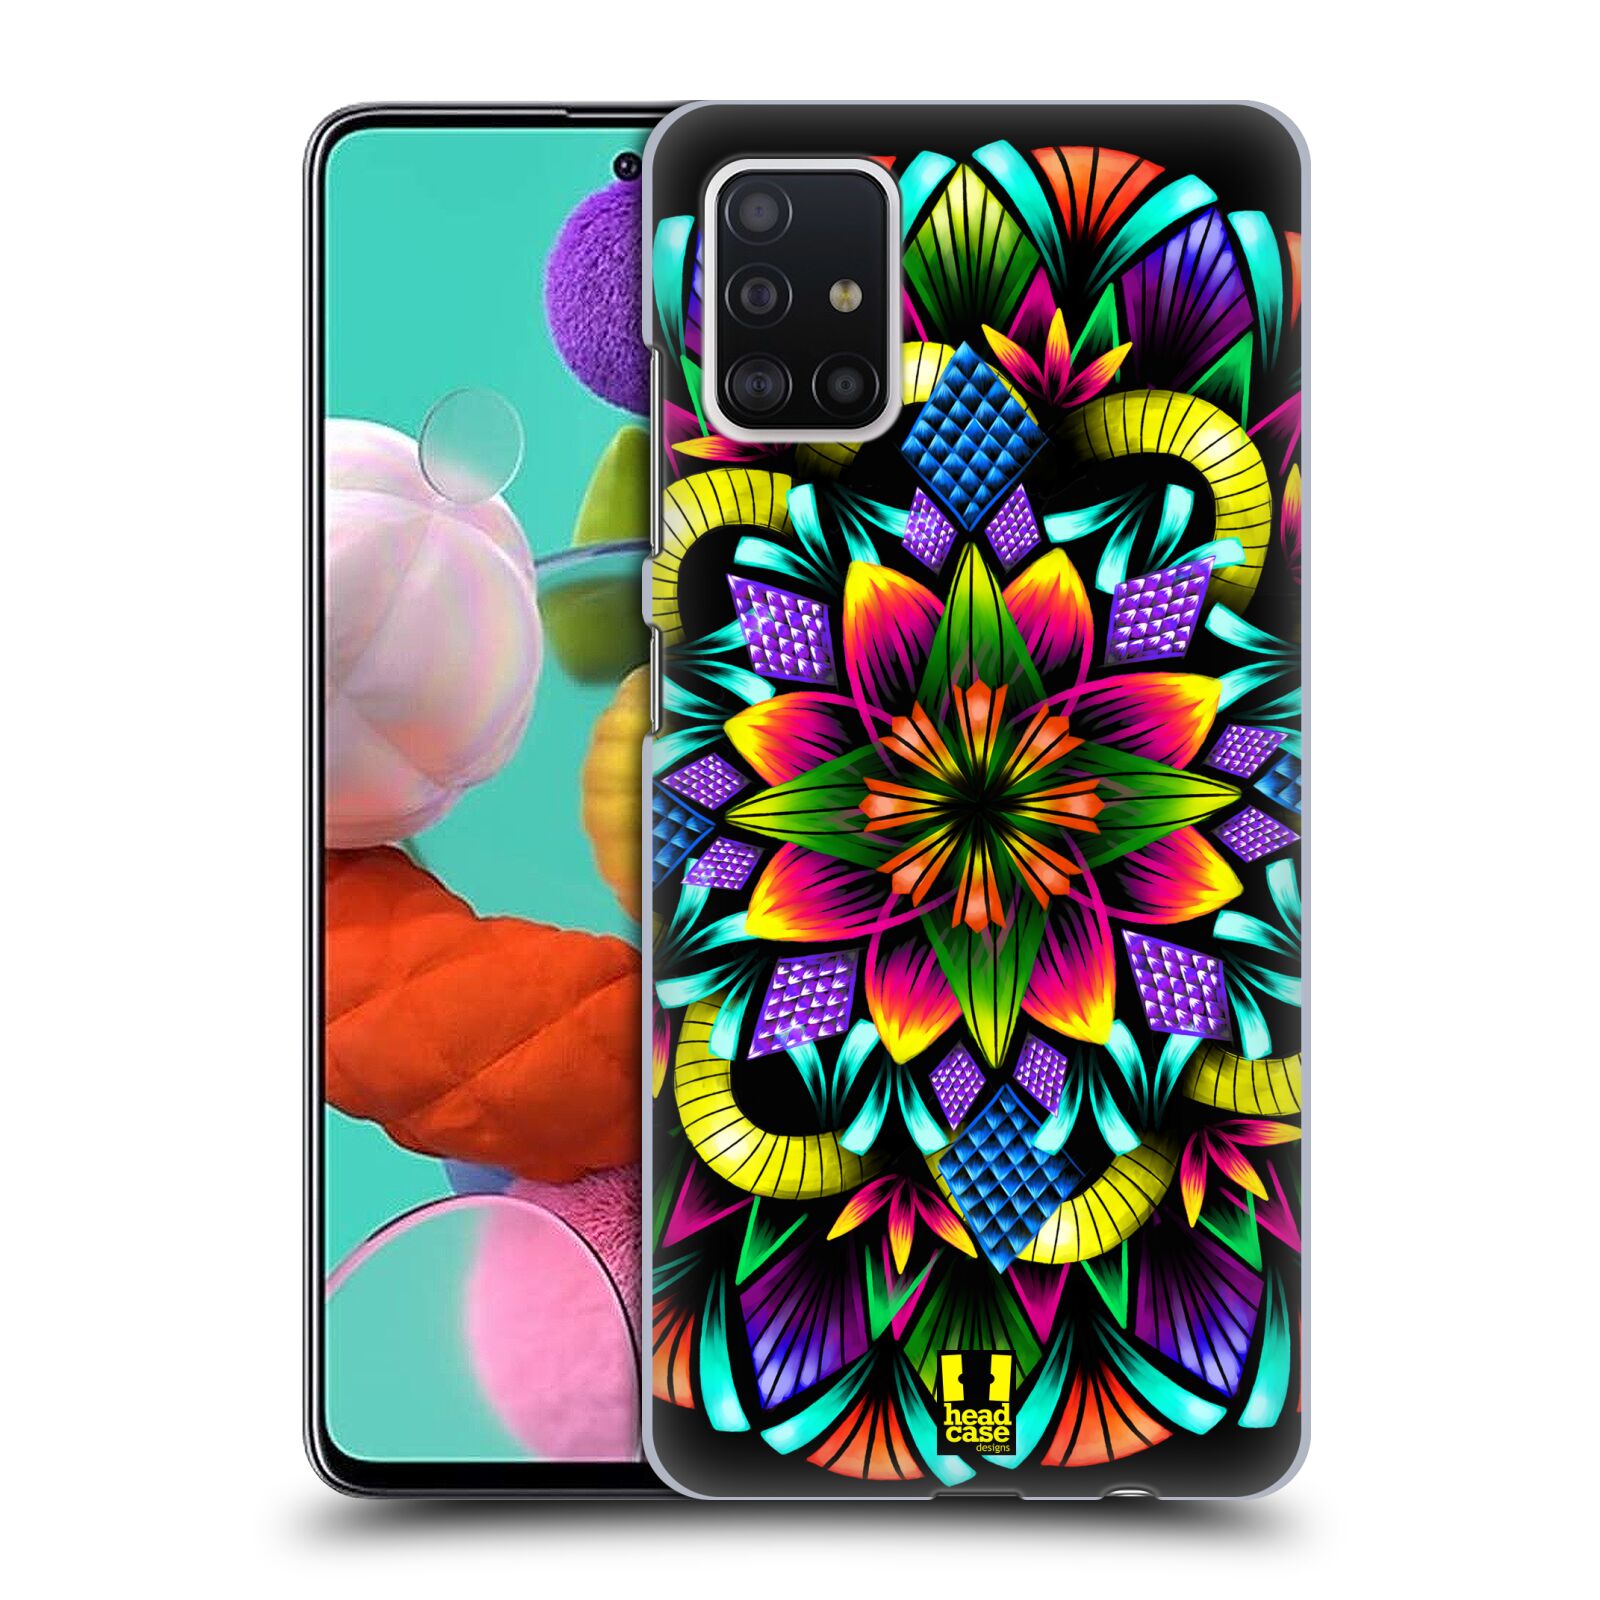 Pouzdro na mobil Samsung Galaxy A51 - HEAD CASE - vzor Indie Mandala kaleidoskop barevný vzor KVĚTINA